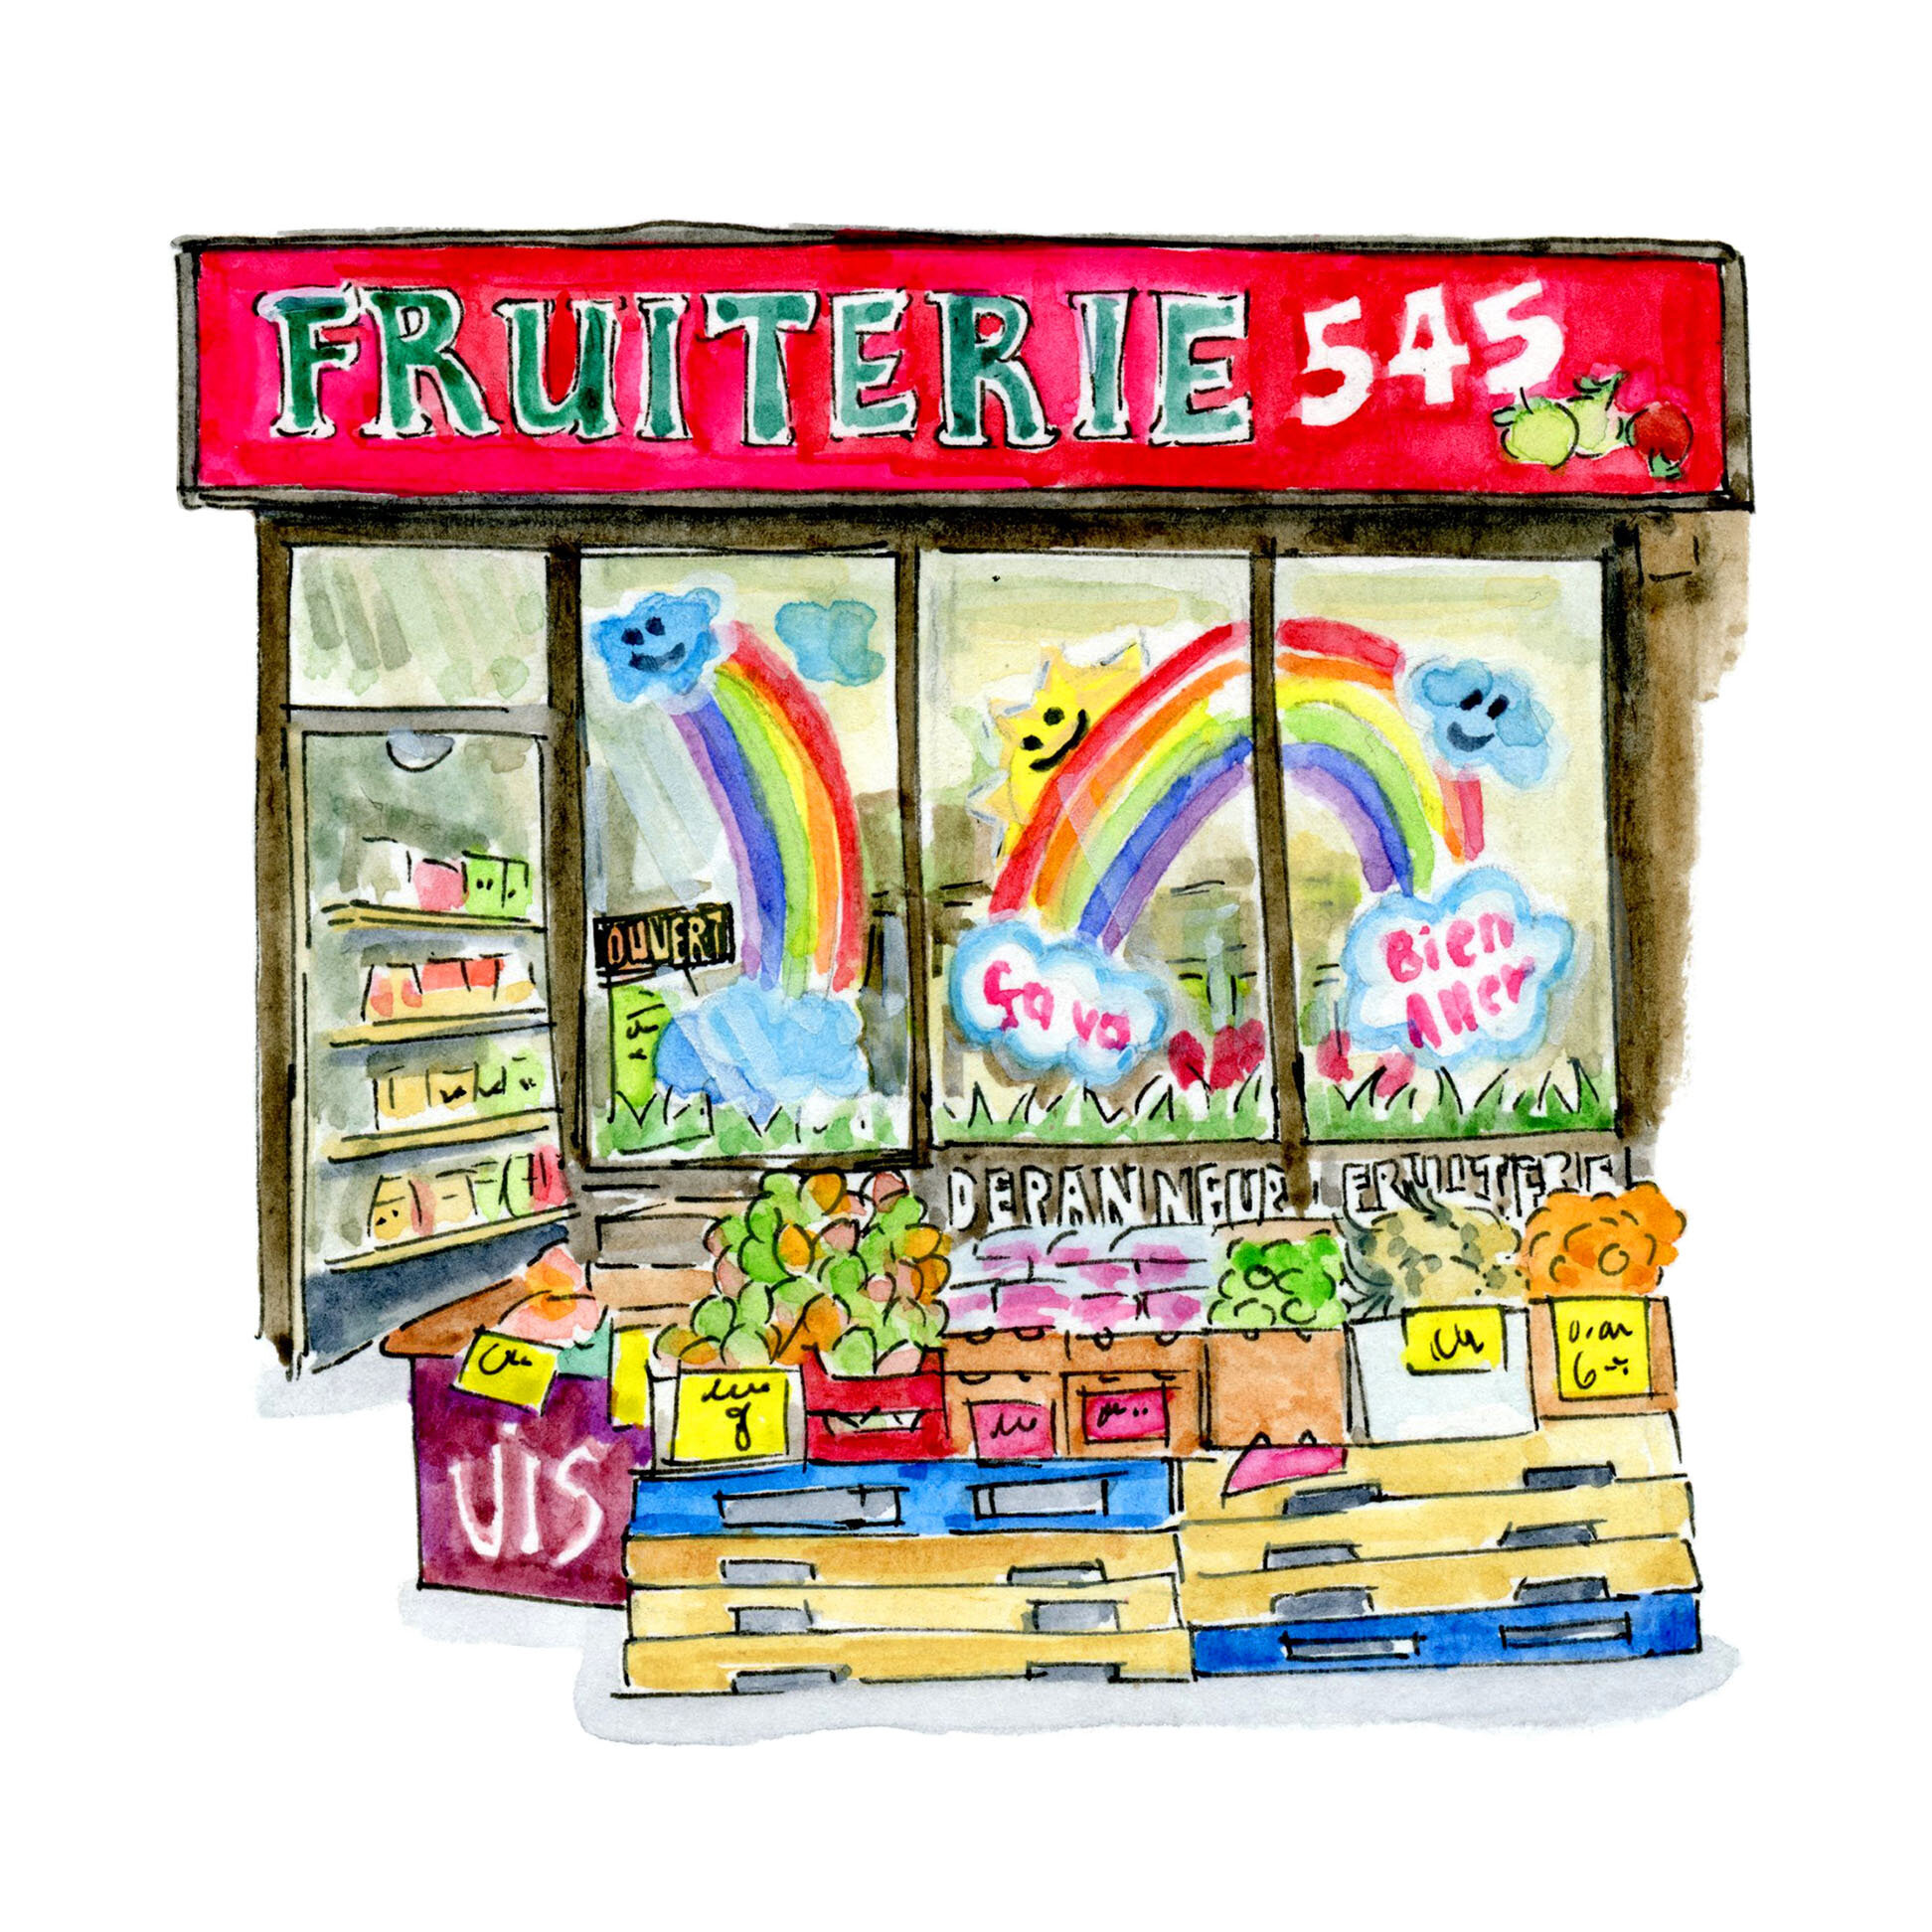 fruiterie545withspace.jpg